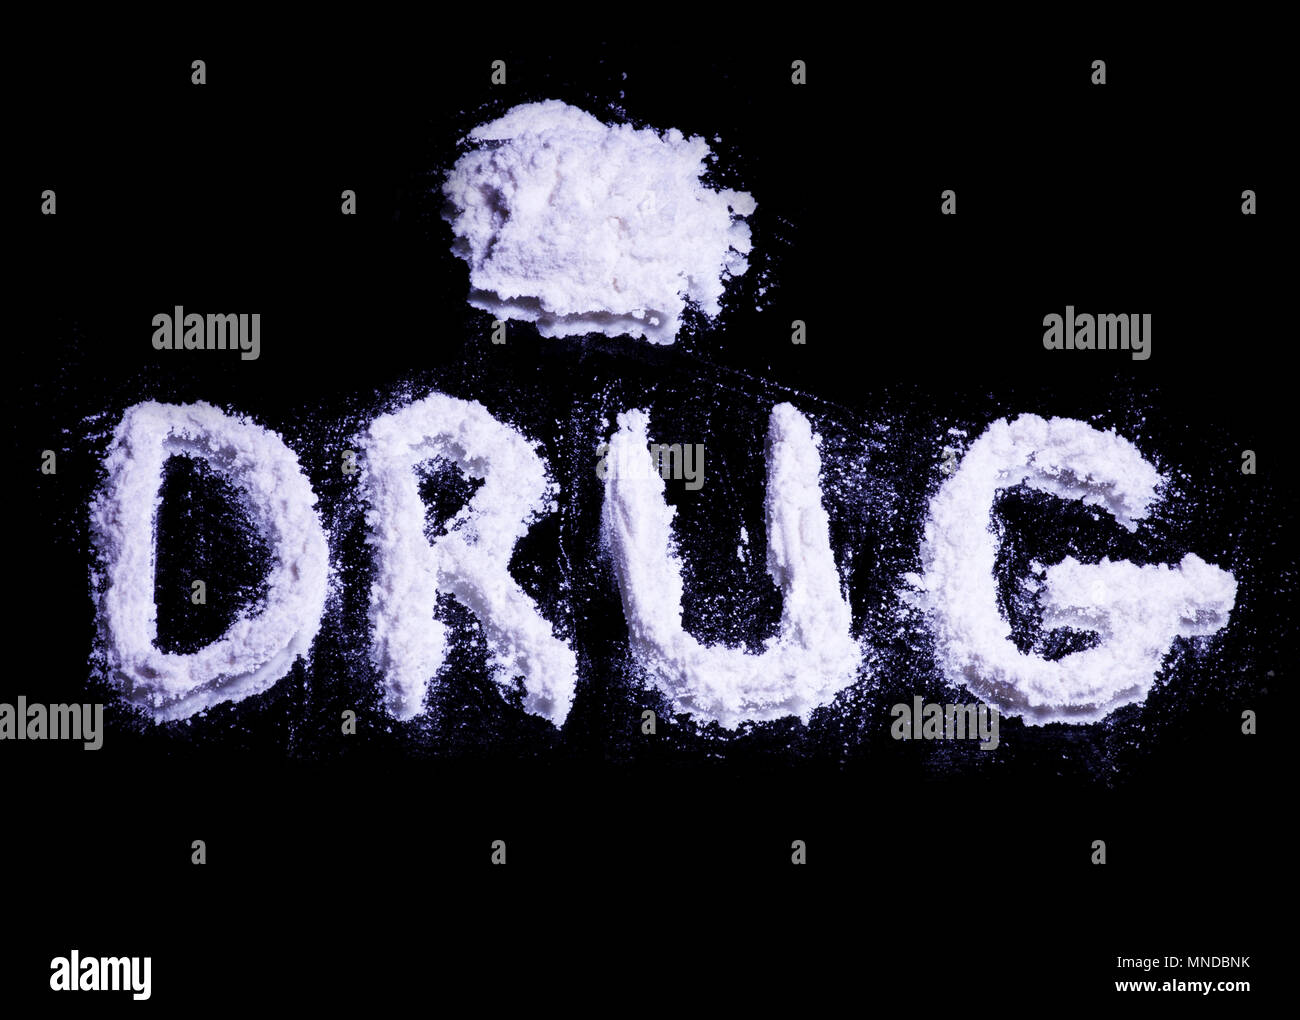 Wort Droge und ein Haufen von weißen Droge auf einen Spiegel Stockfoto